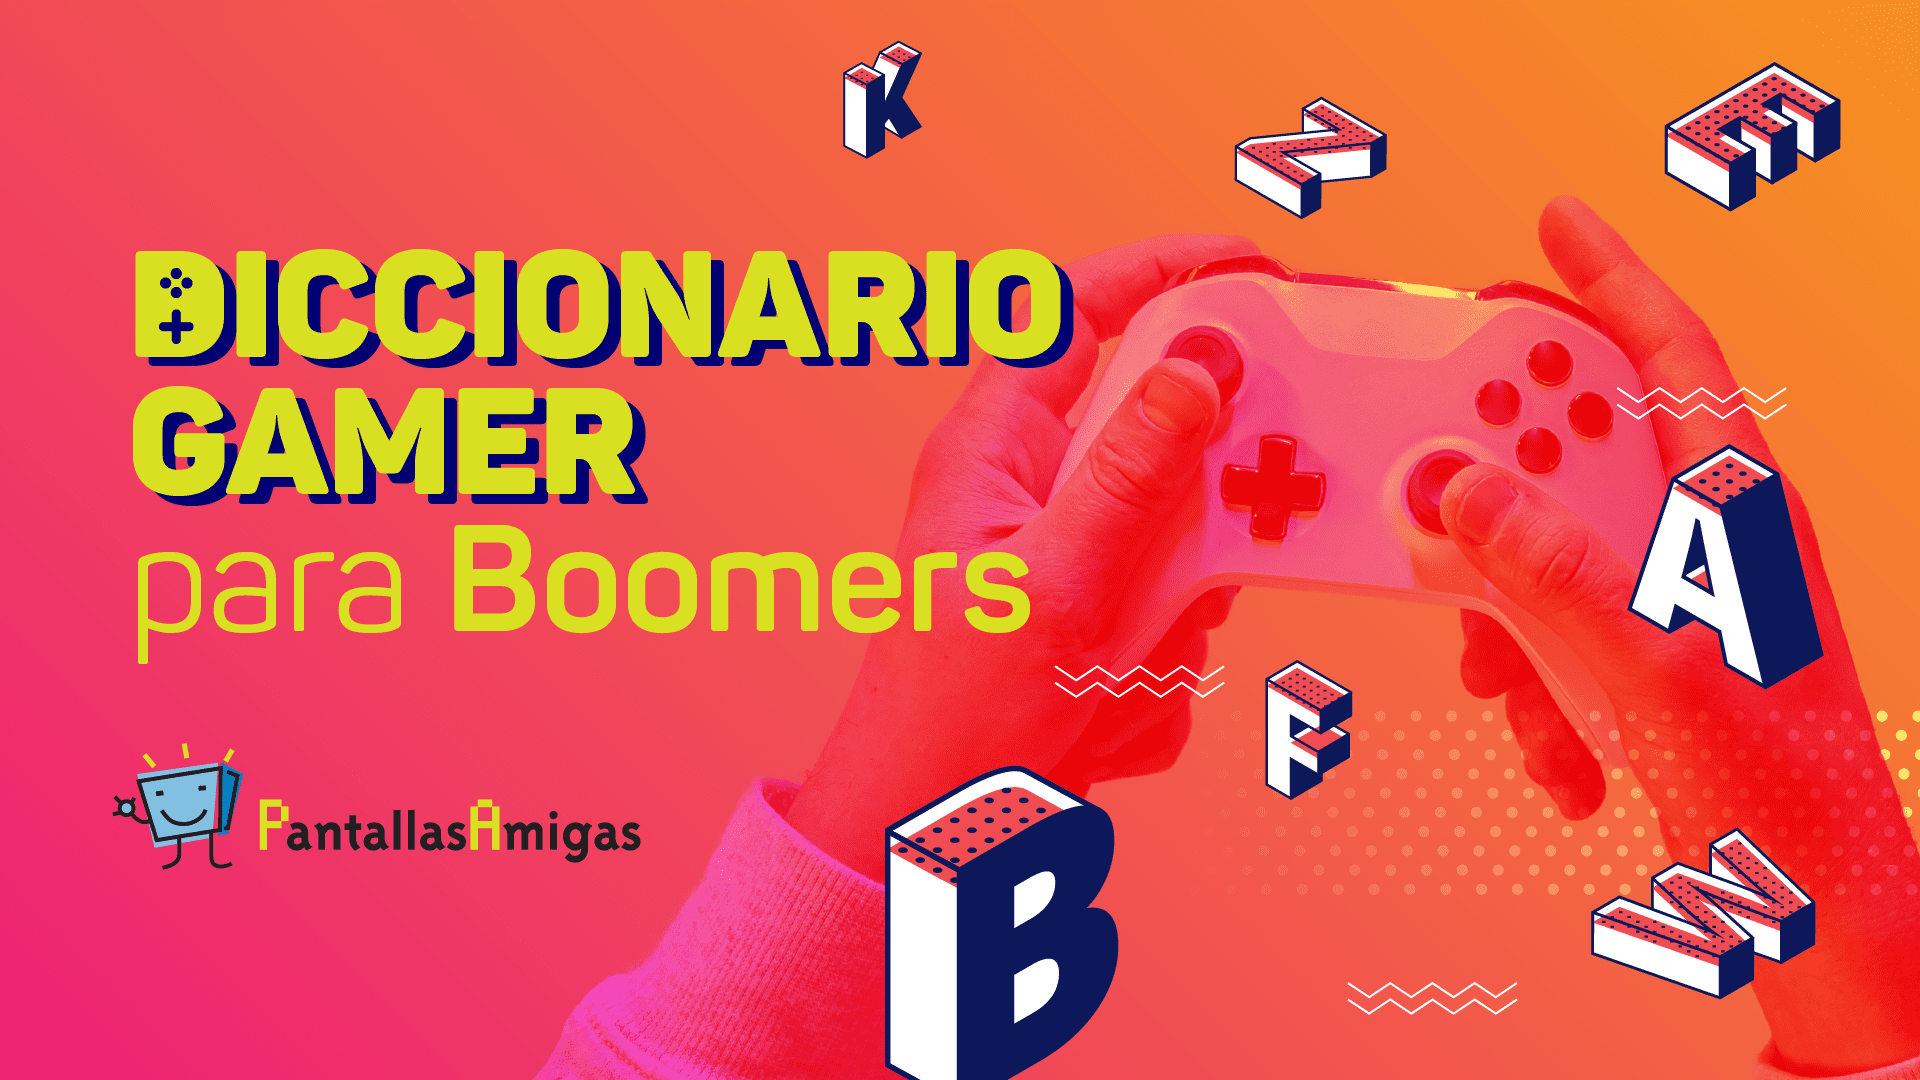 1682126703 500 Diccionario Streamer para Boomers - Diccionario Streamer para Boomers